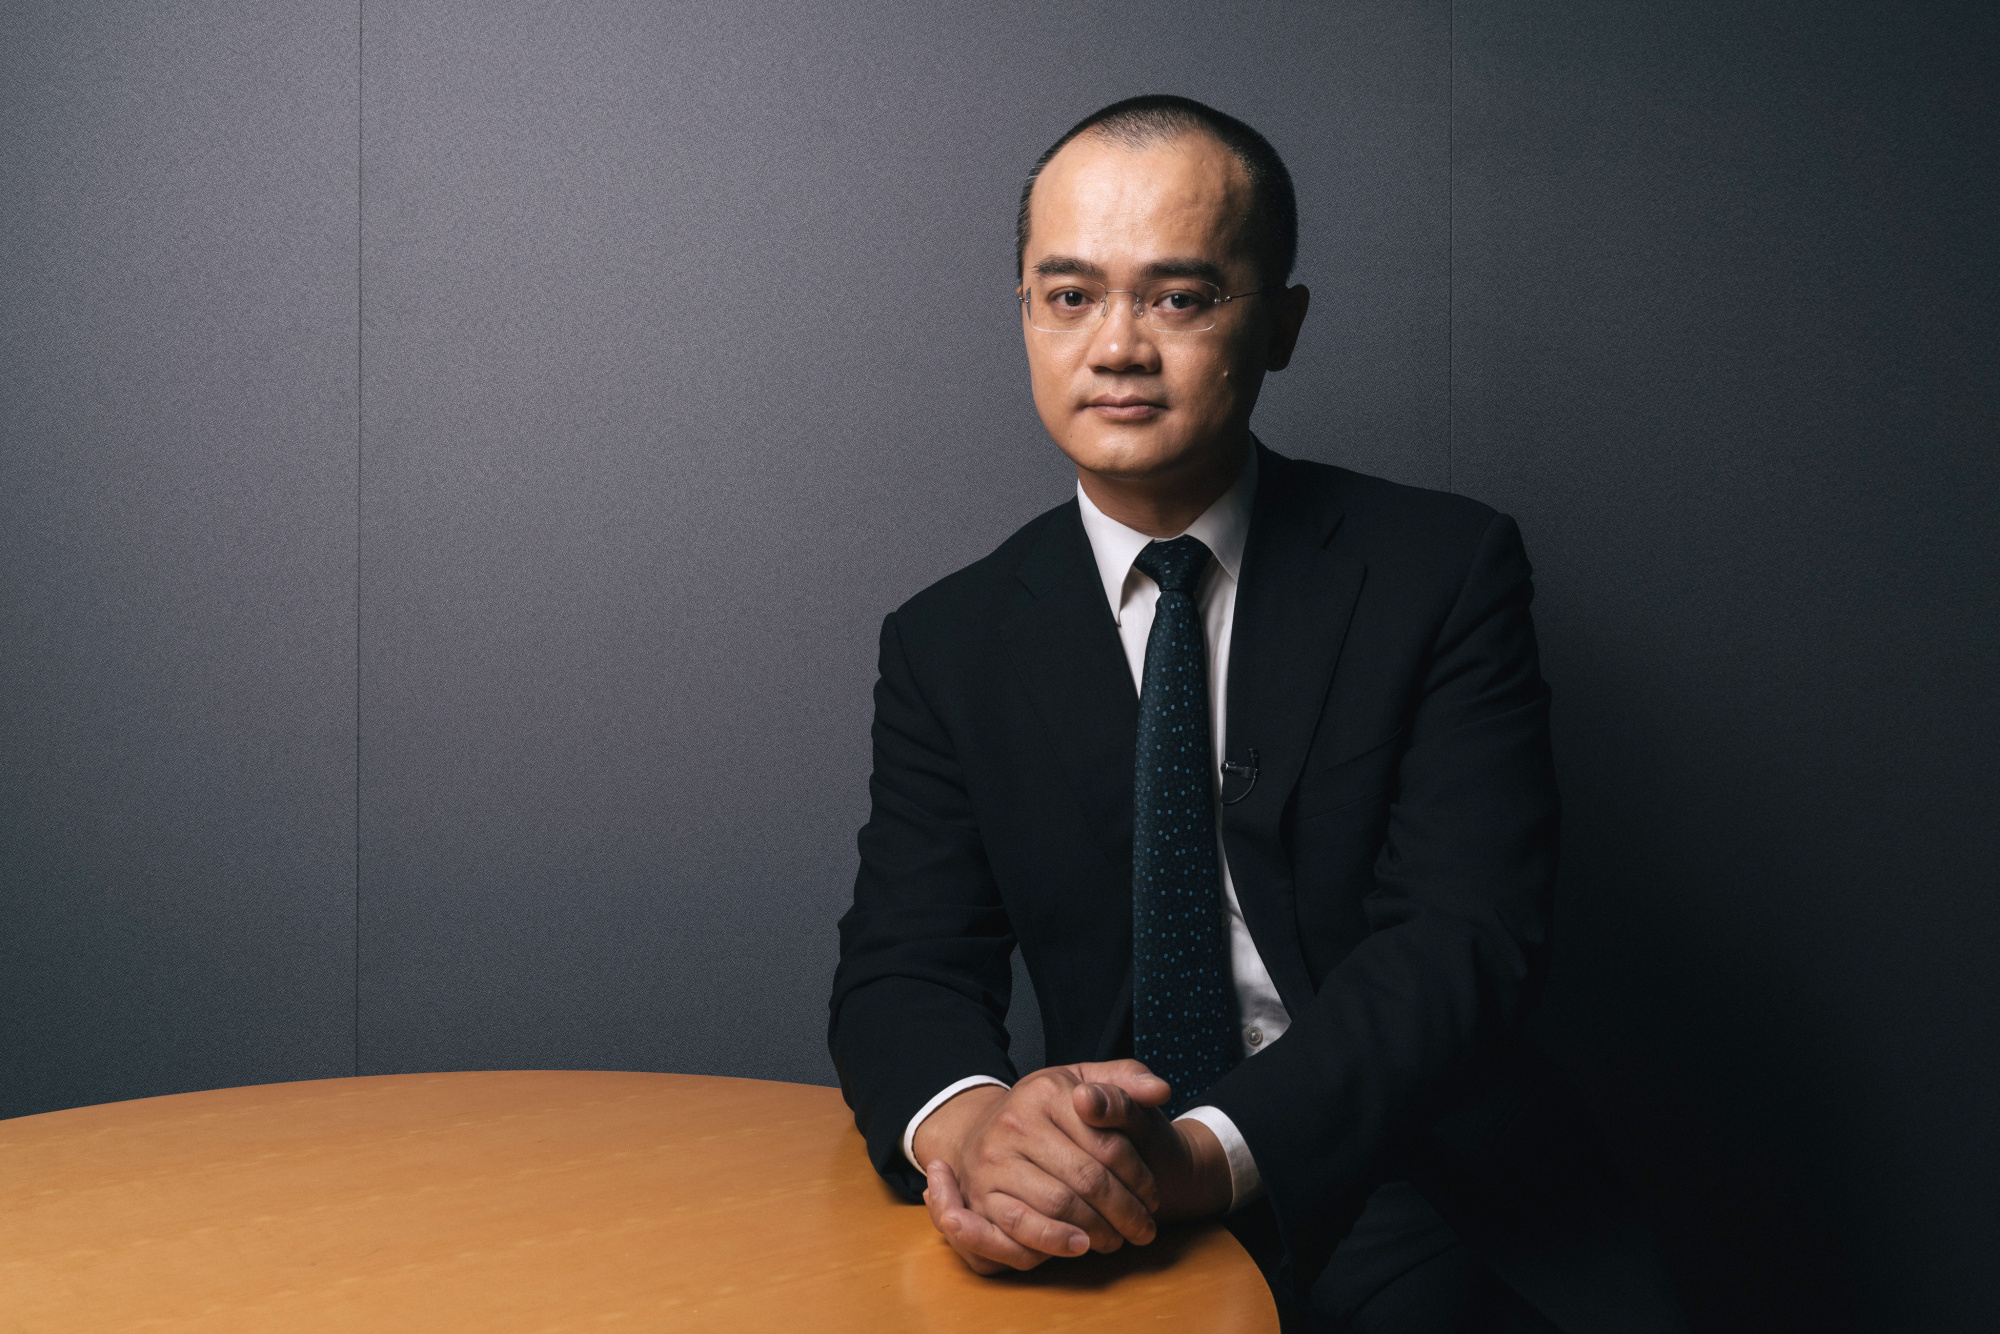 Meituan Dianping Founder Wang Xing Boosts Fortune to $10 Billion ...